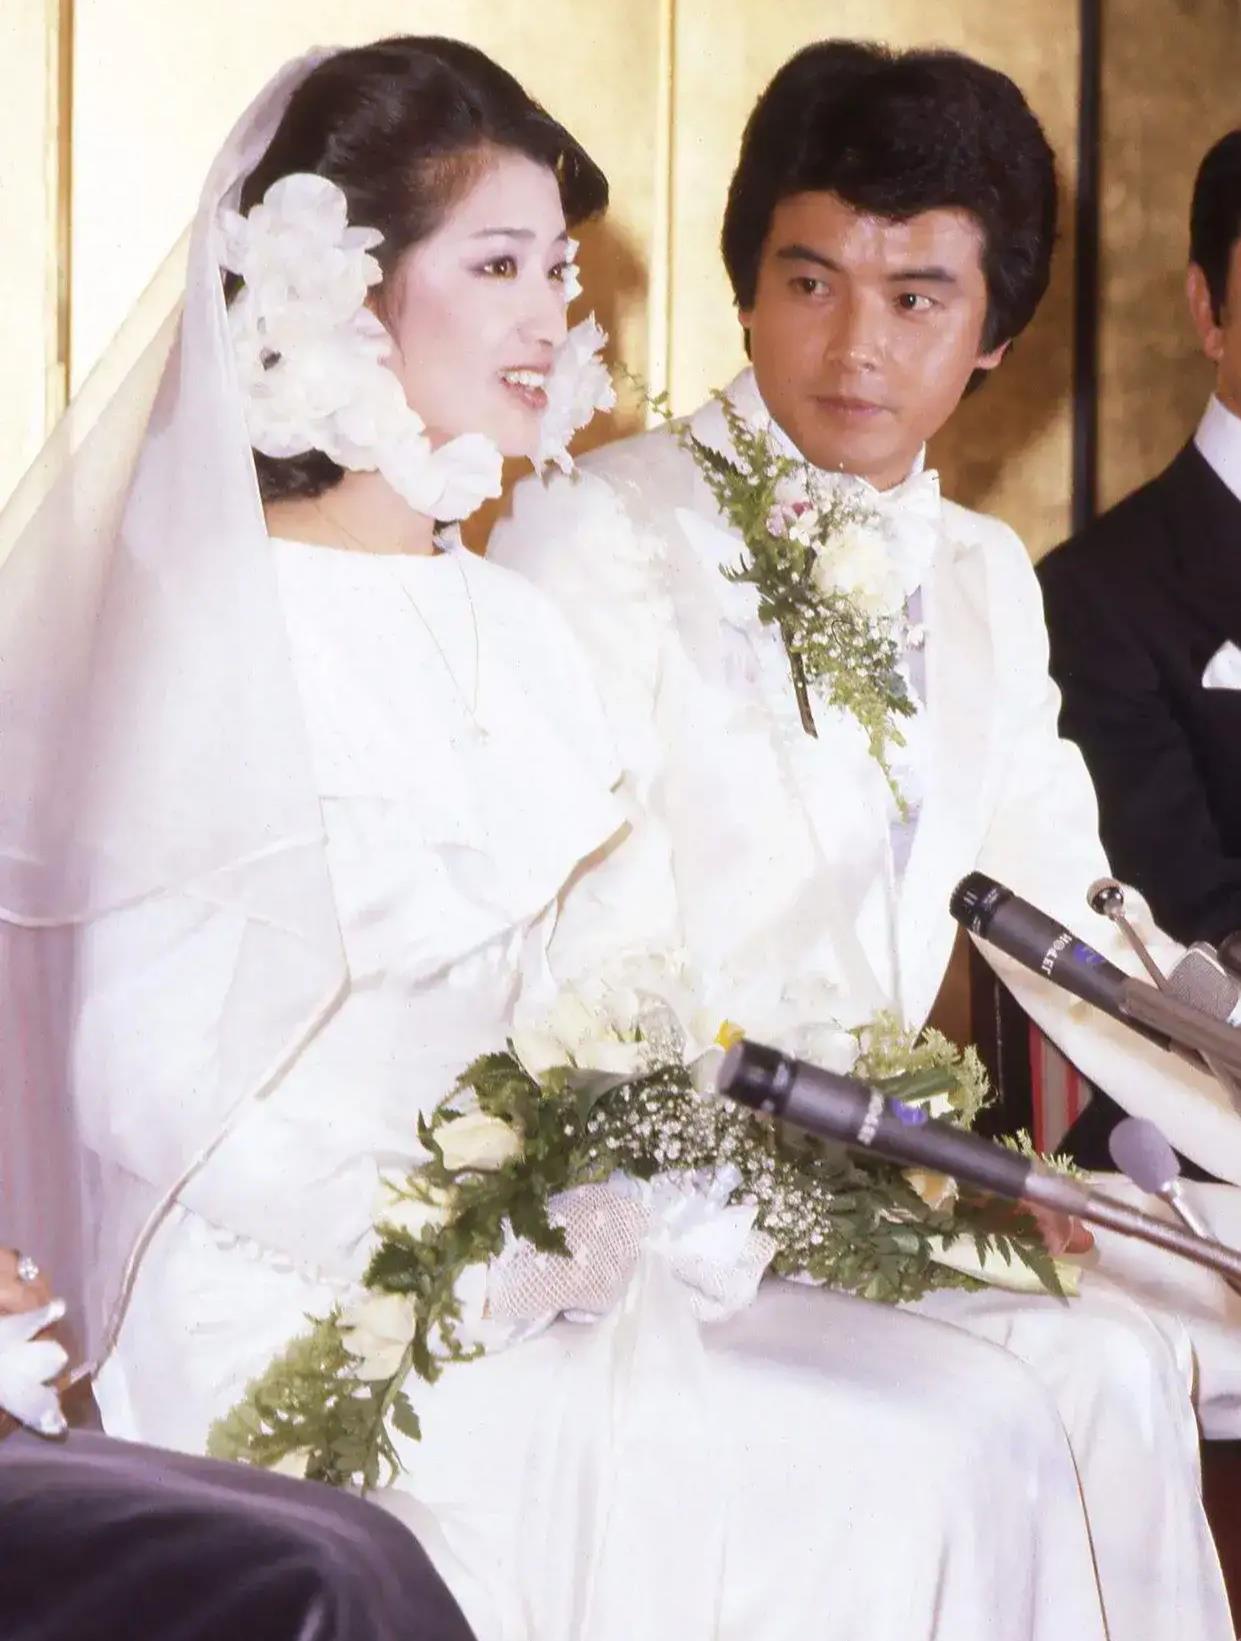 在娱乐圈所有的婚纱照里,最喜欢的就是三浦友和与山口百惠的照片